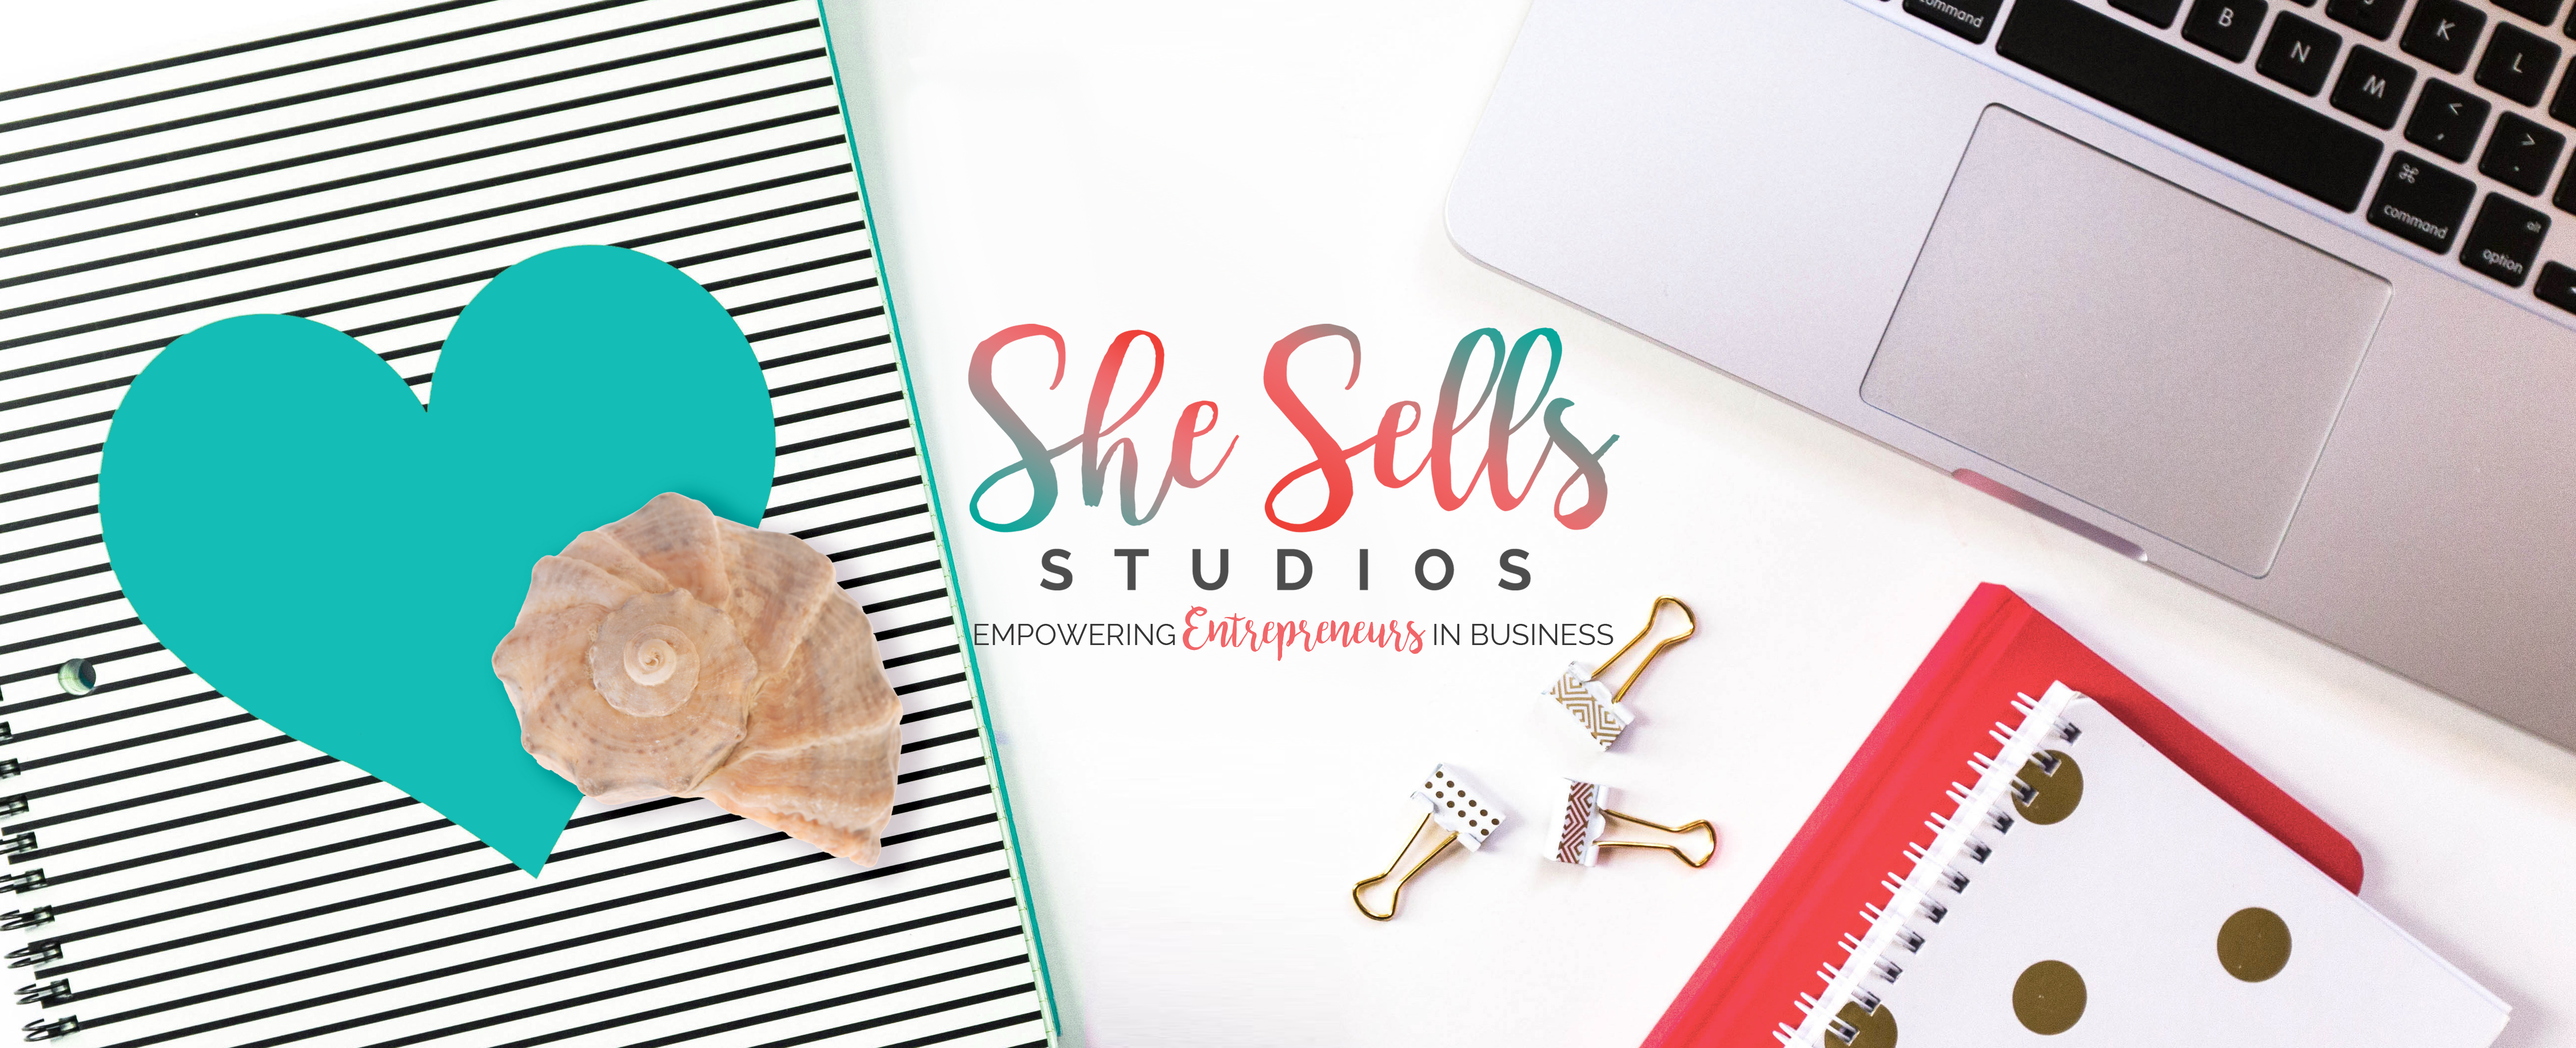 Contact She Sells Studios